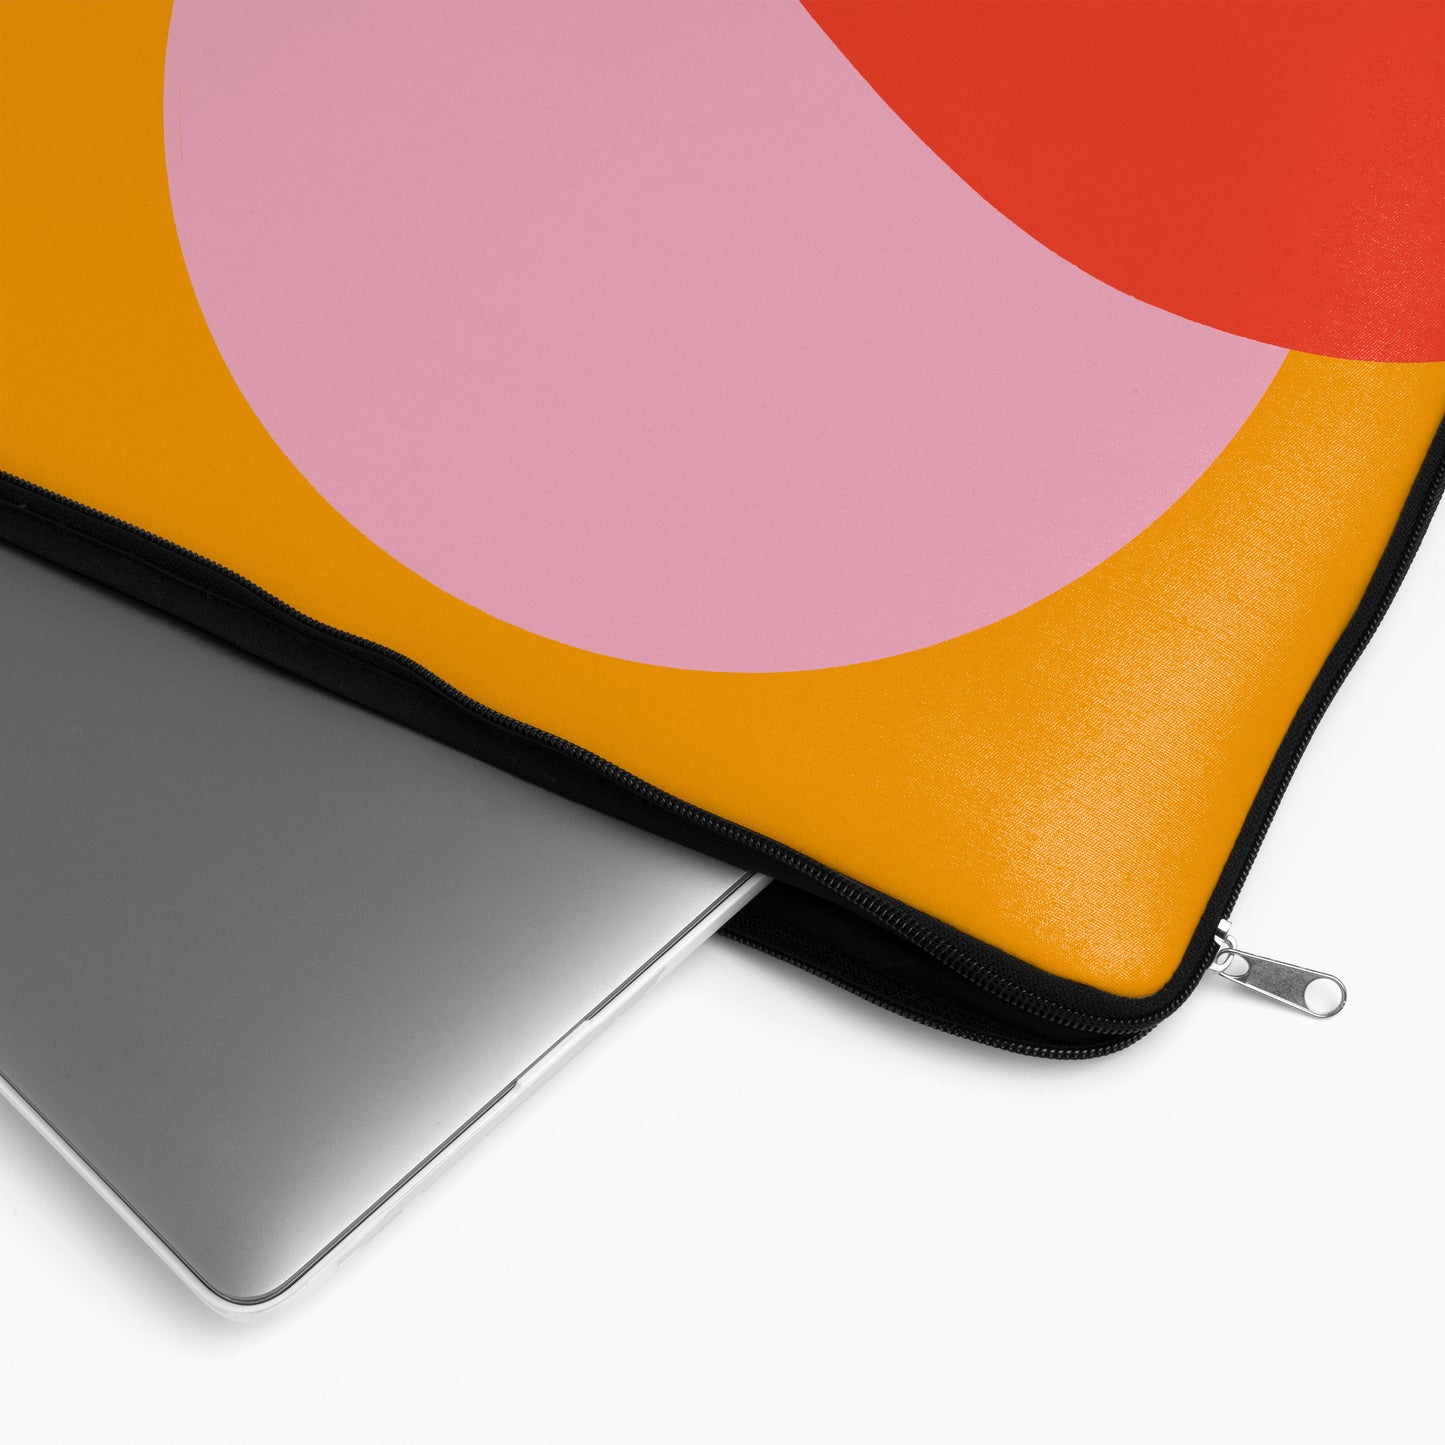 Modern Minimalist Pink Sun - Laptop Sleeve